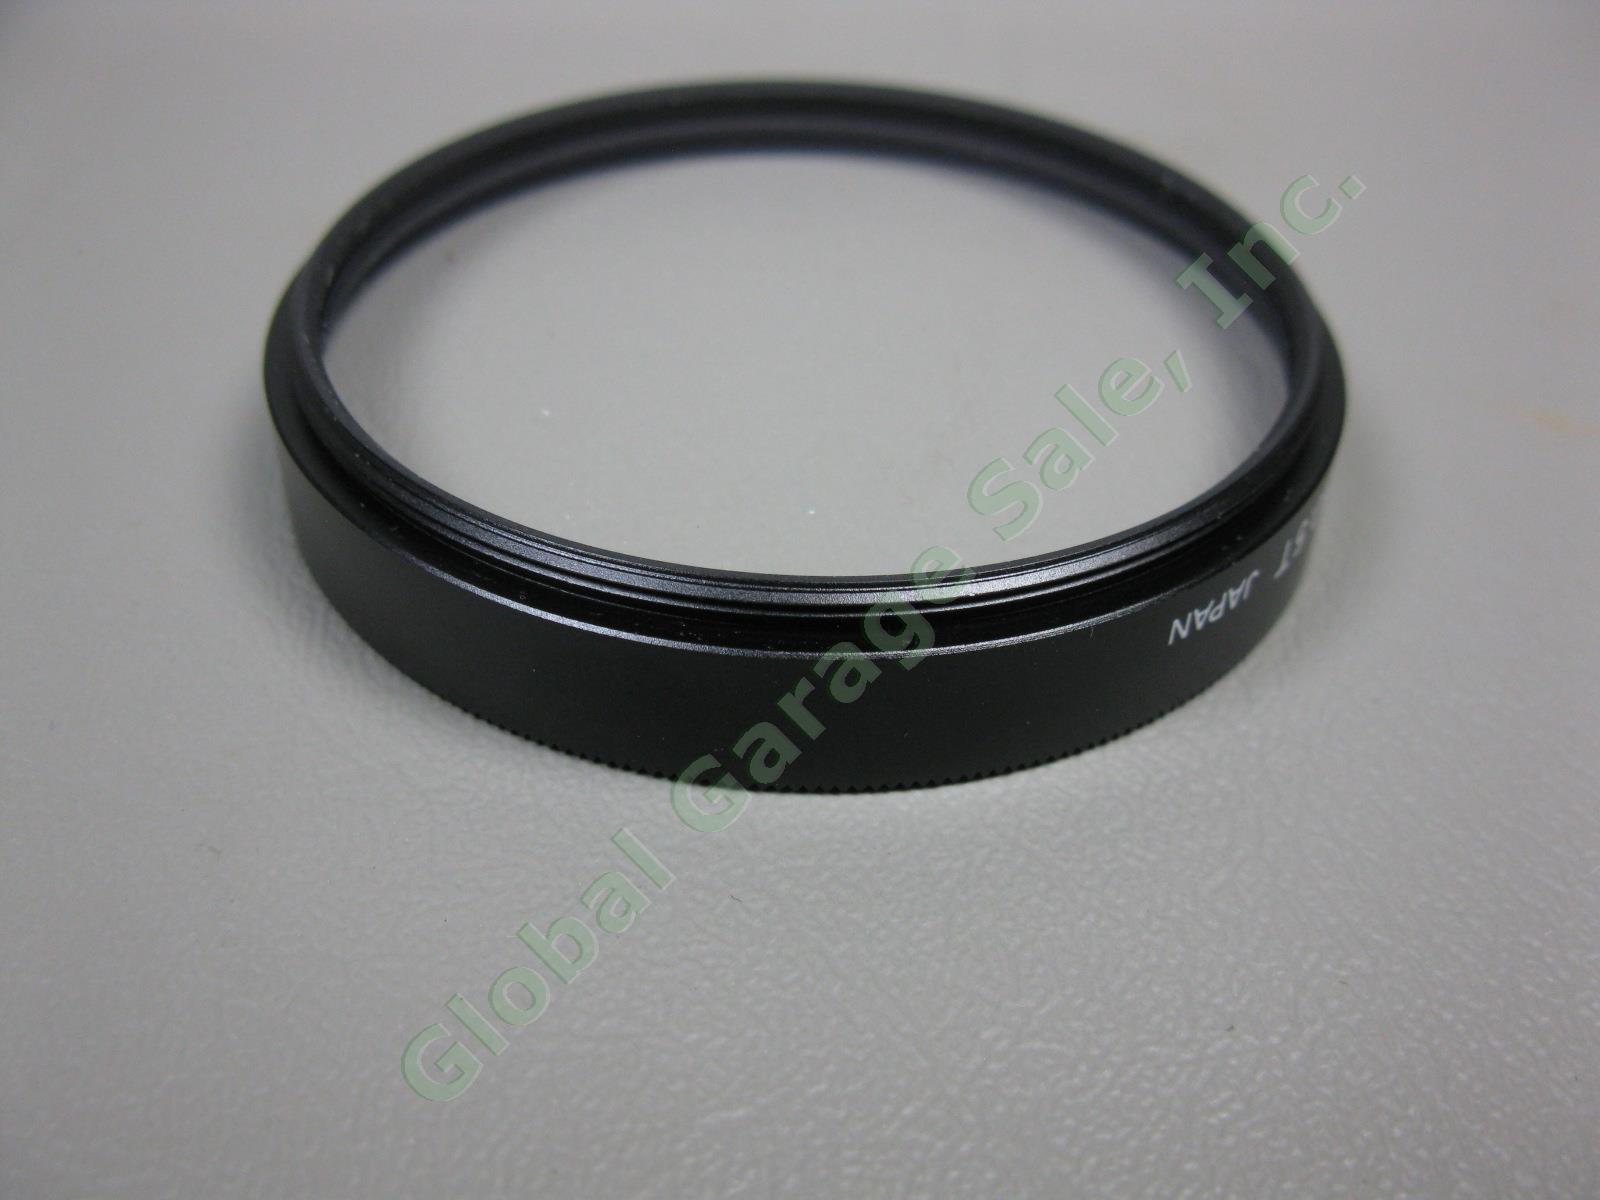 2 Nikon Macro Close-Up Attachment Lens Lot No 5T + 6T + Case 77 62 Filter Bundle 5